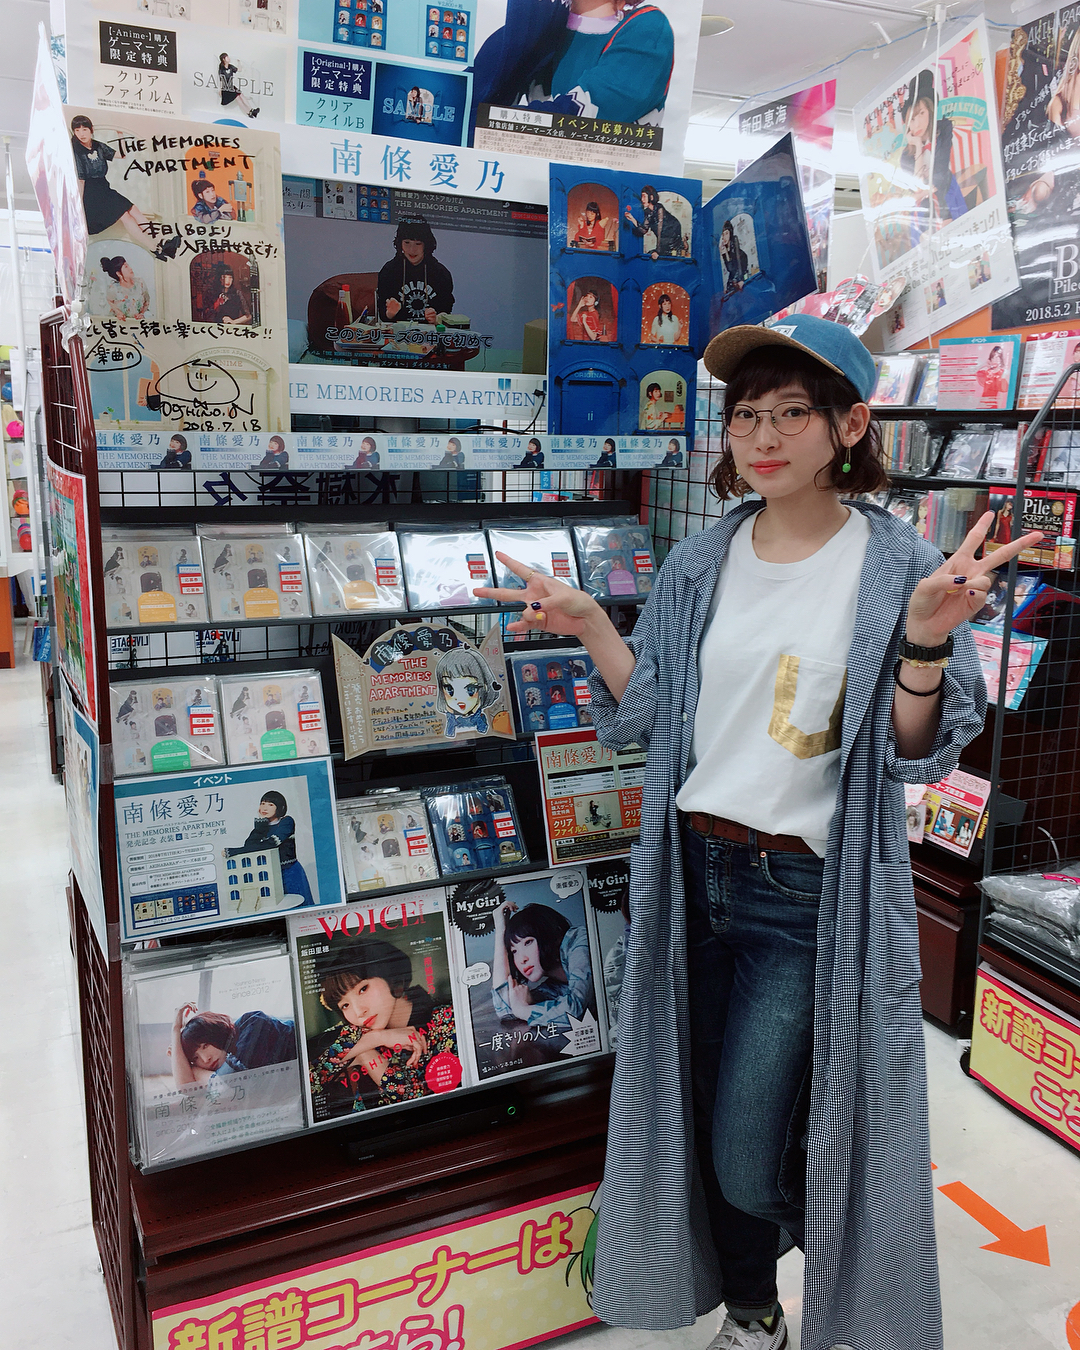 南條愛乃 ベストアルバム本日発売 Akihabaraゲーマーズ本店さま 素敵なイラストまでありがとうございますっ Thememoriesapartment メモ Moe Zine